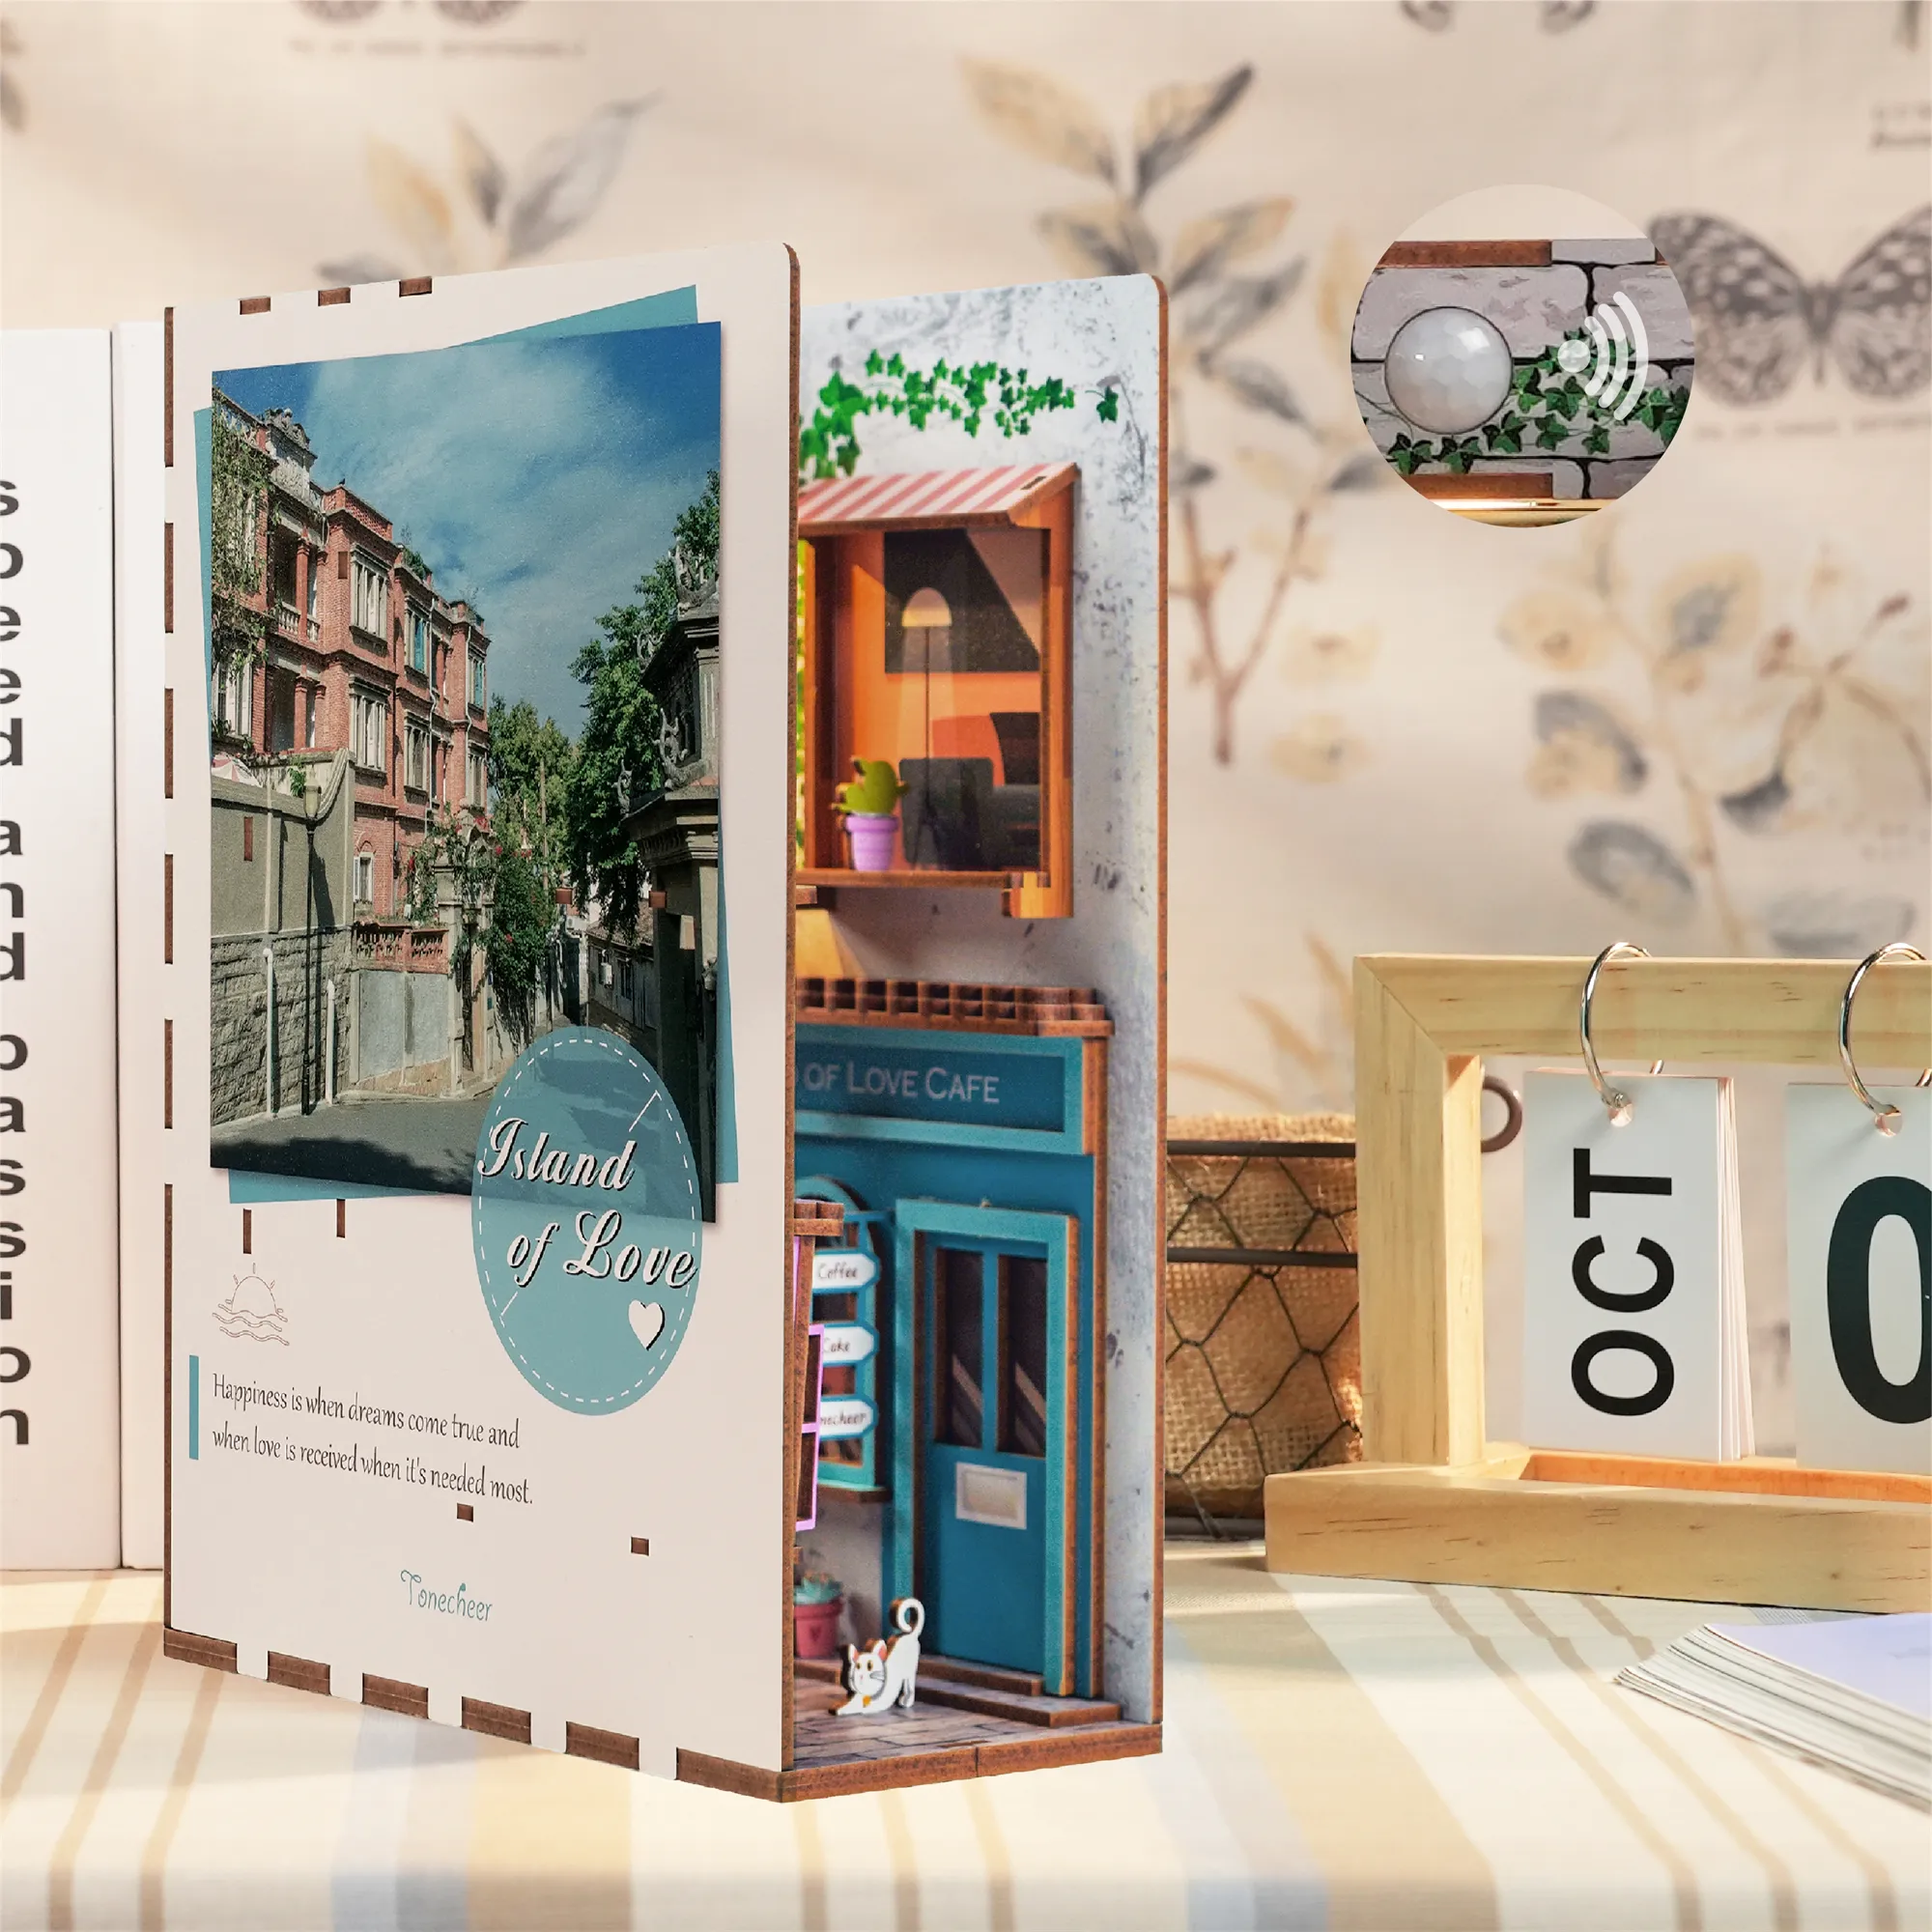 Tonecheer Island of Love book nook kit in miniatura fai da te 3D puzzle in legno nook book